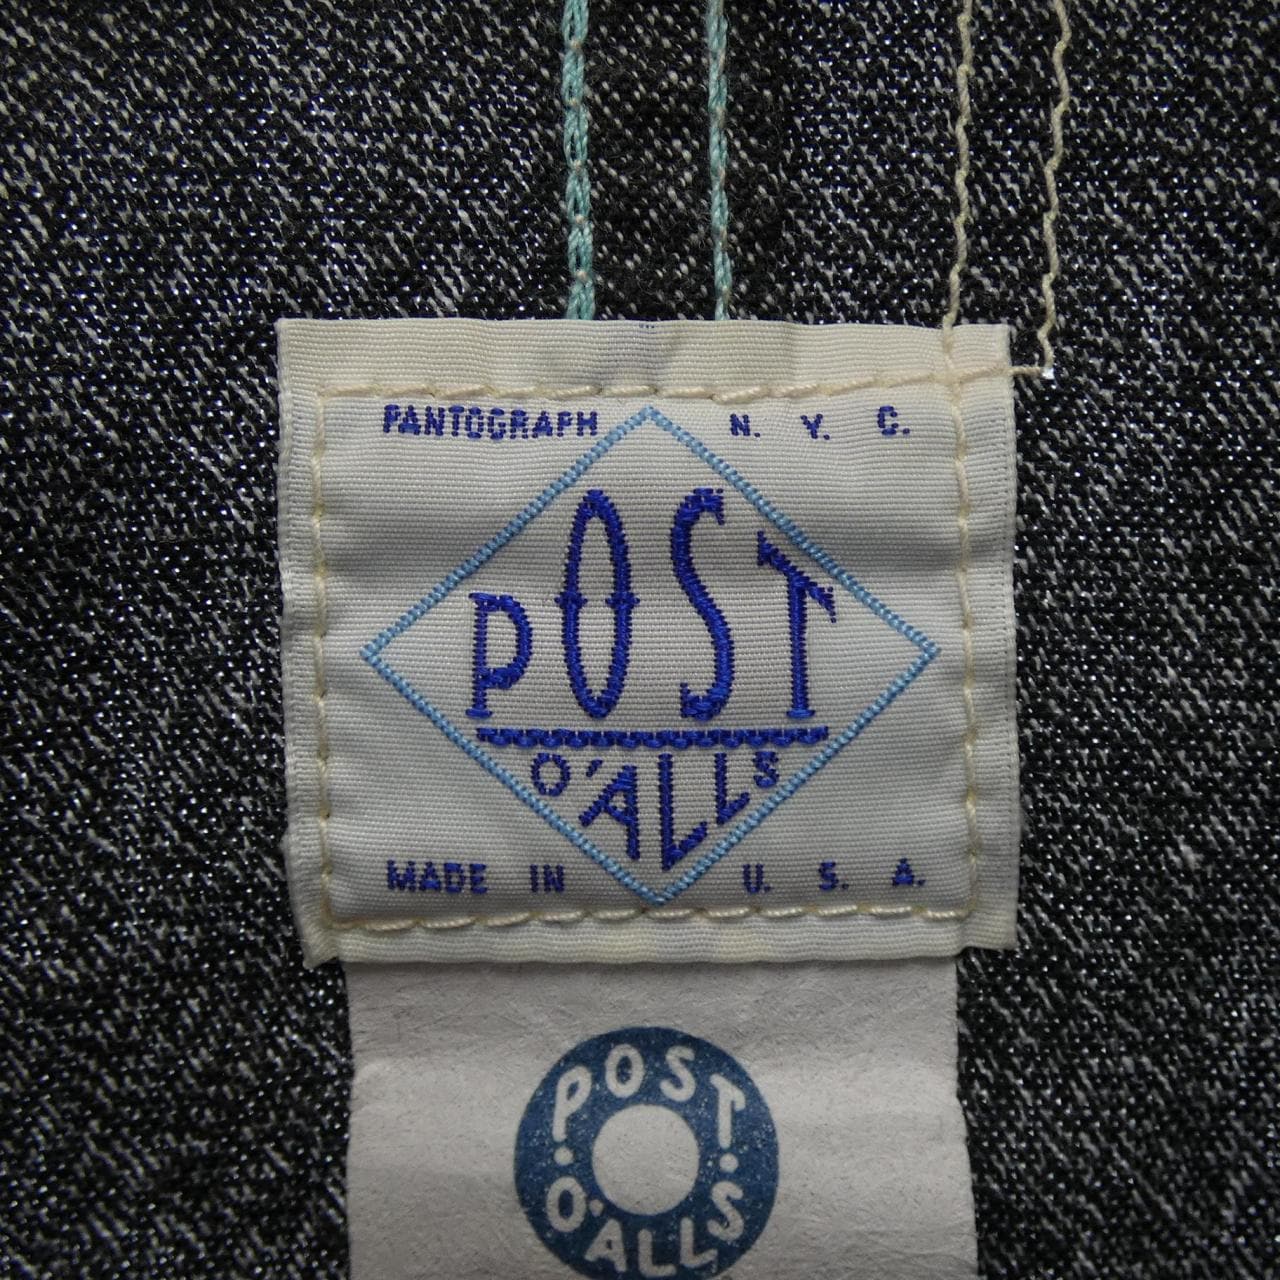 Post overalls POST O'ALLS jacket